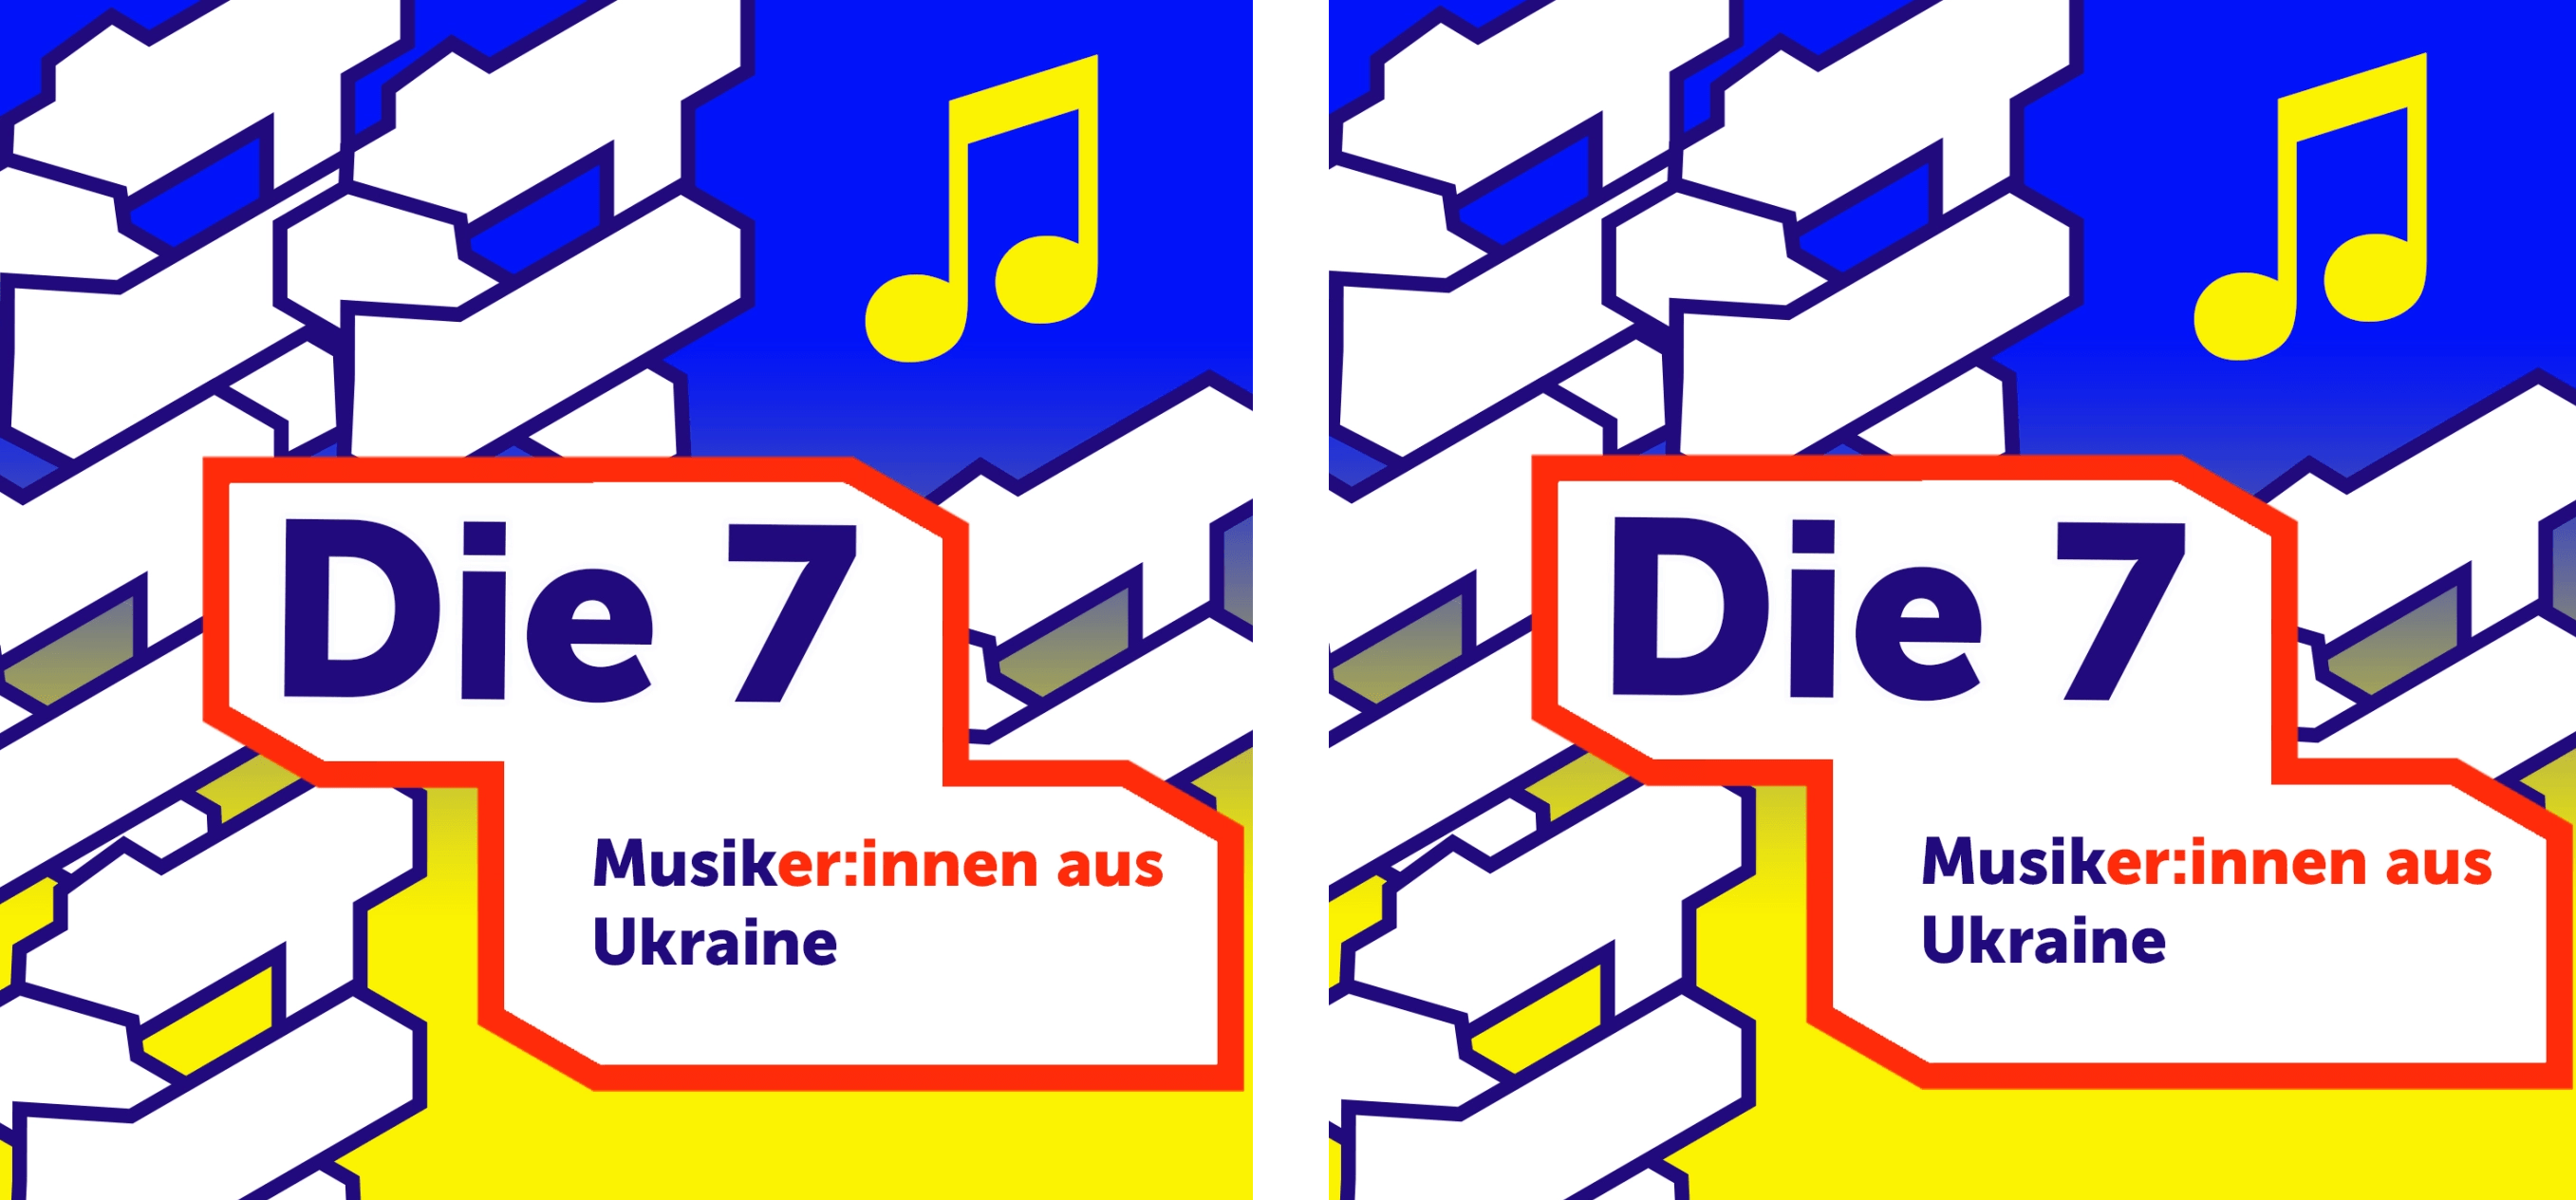 Die andere Mög­lich­keit der Unter­stüt­zung für die Ukraine: Spo­tify-Abbo­ne­ment ukrai­ni­scher Musiker_innen